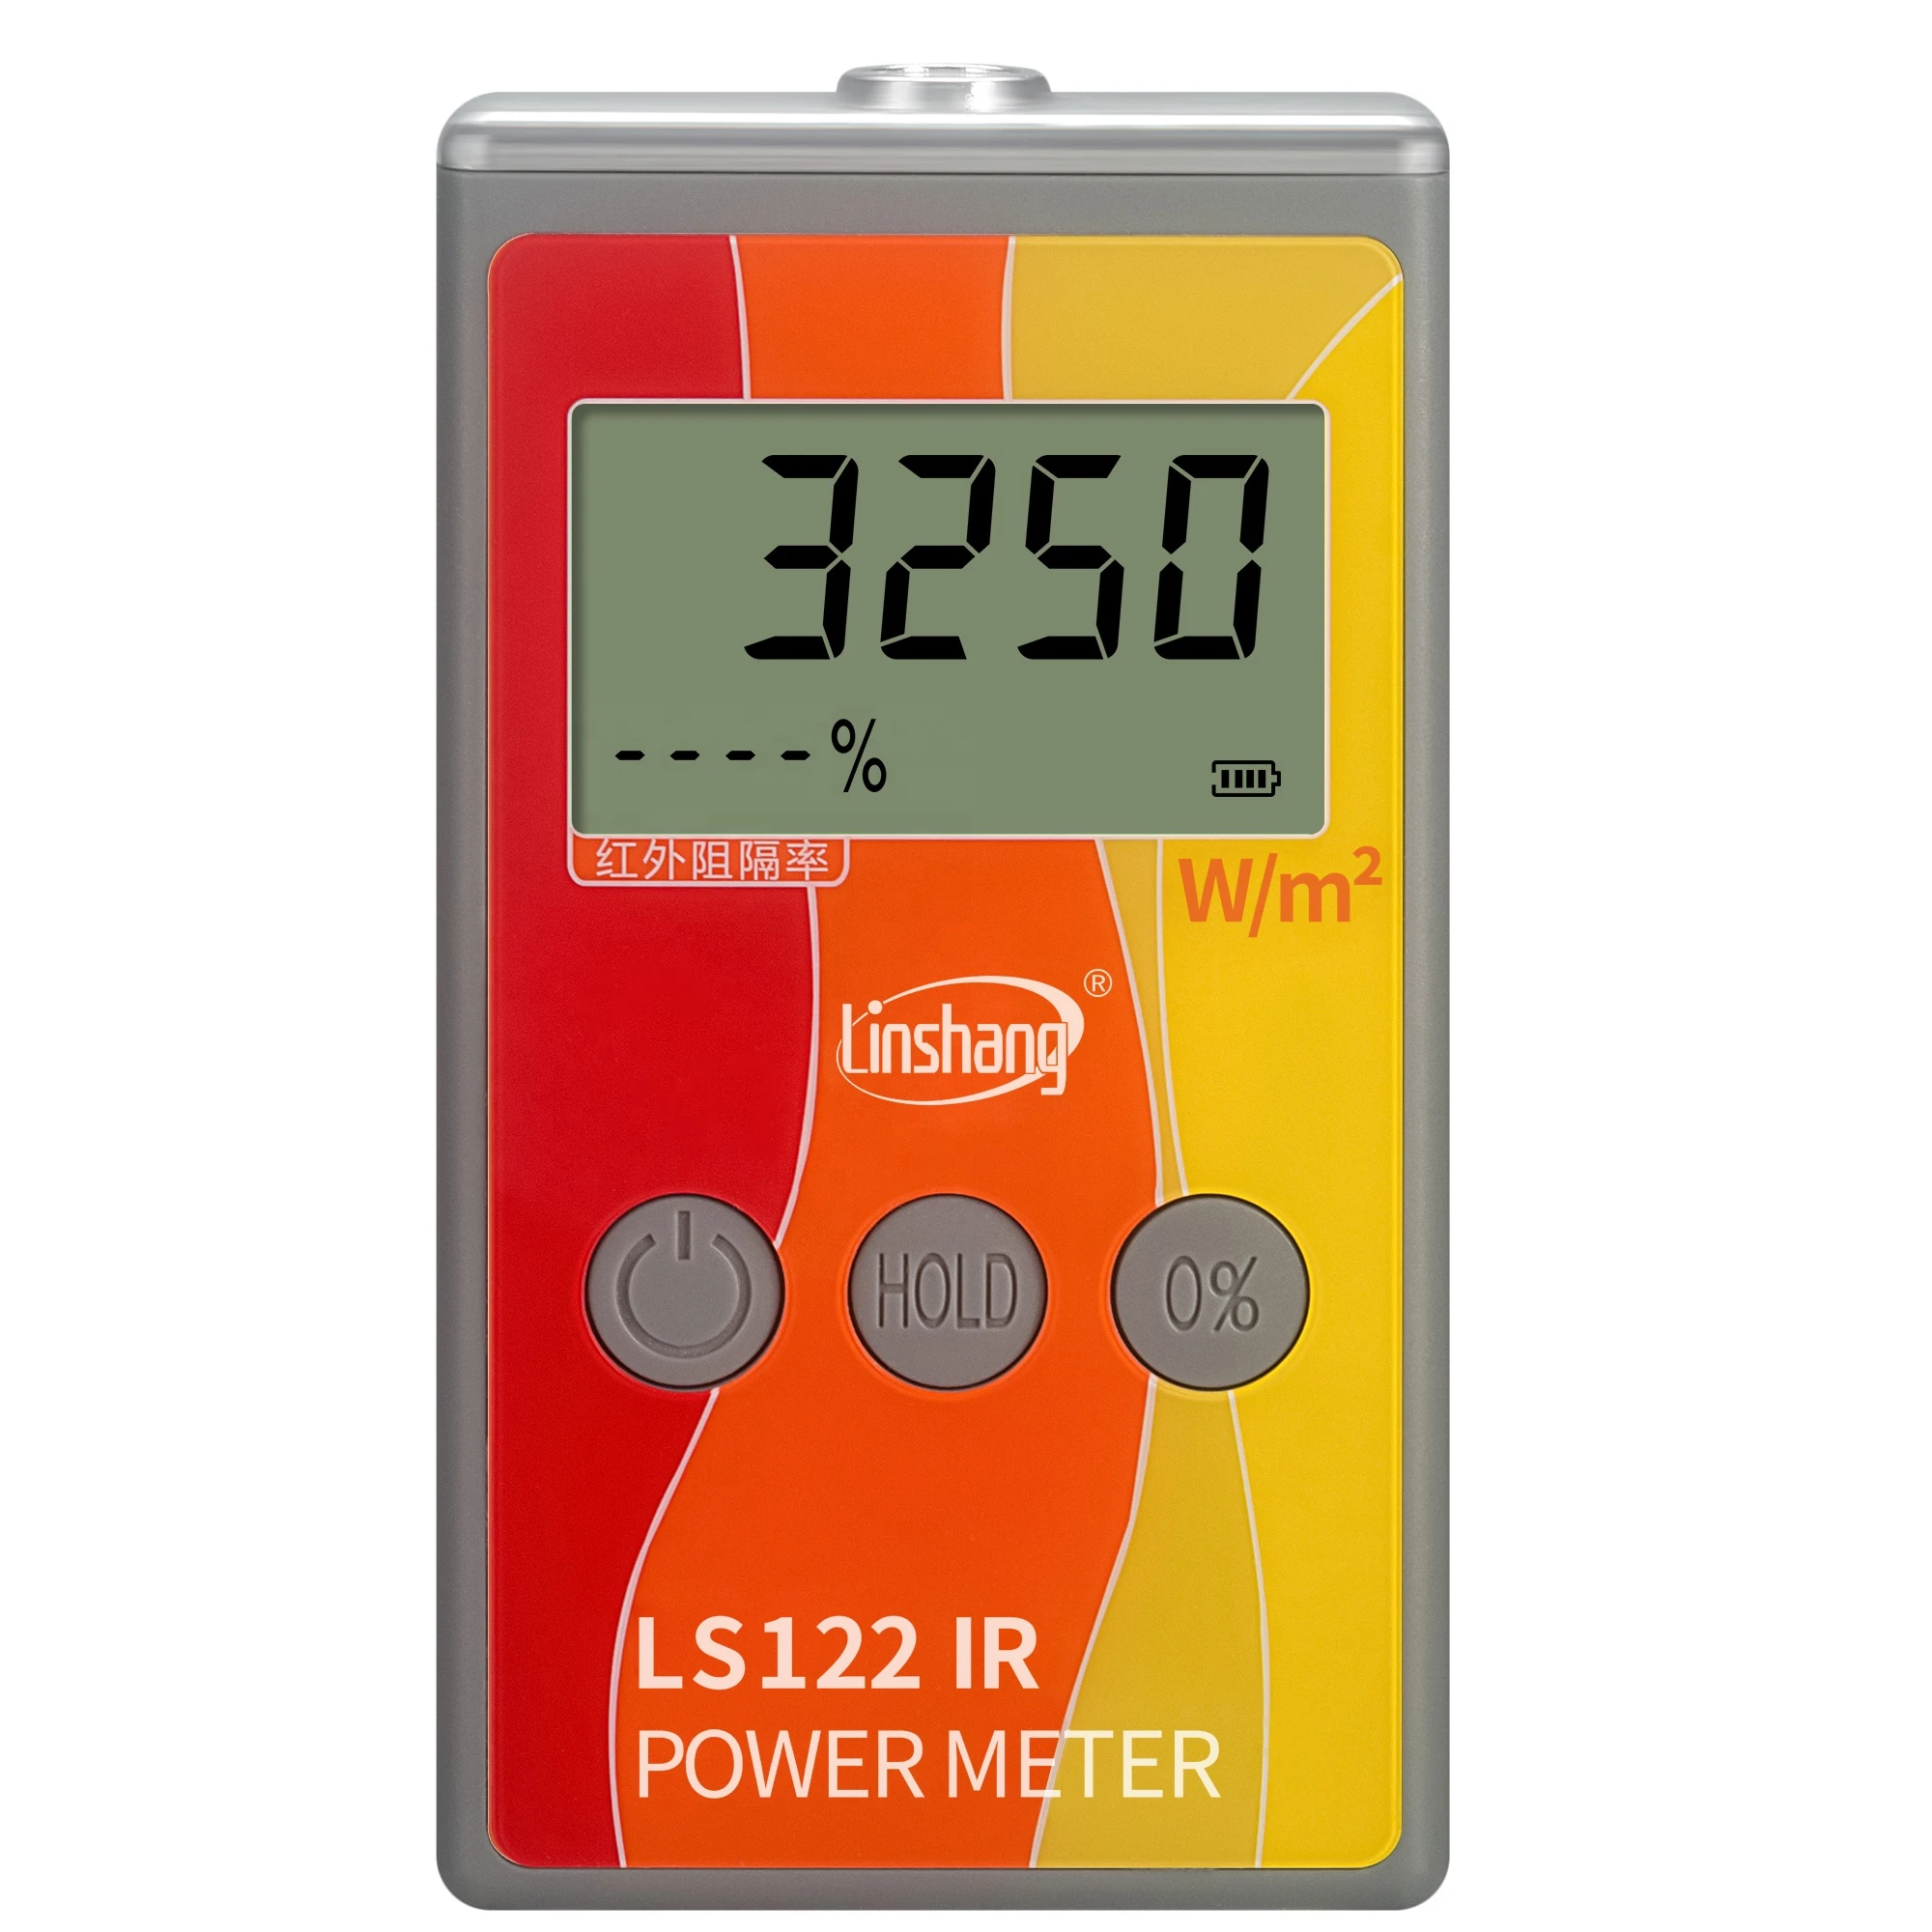 LS122 High Accuracy IR Power Meter IR Transmission Meter Measuring Range 0 ~ 40000 W/m2